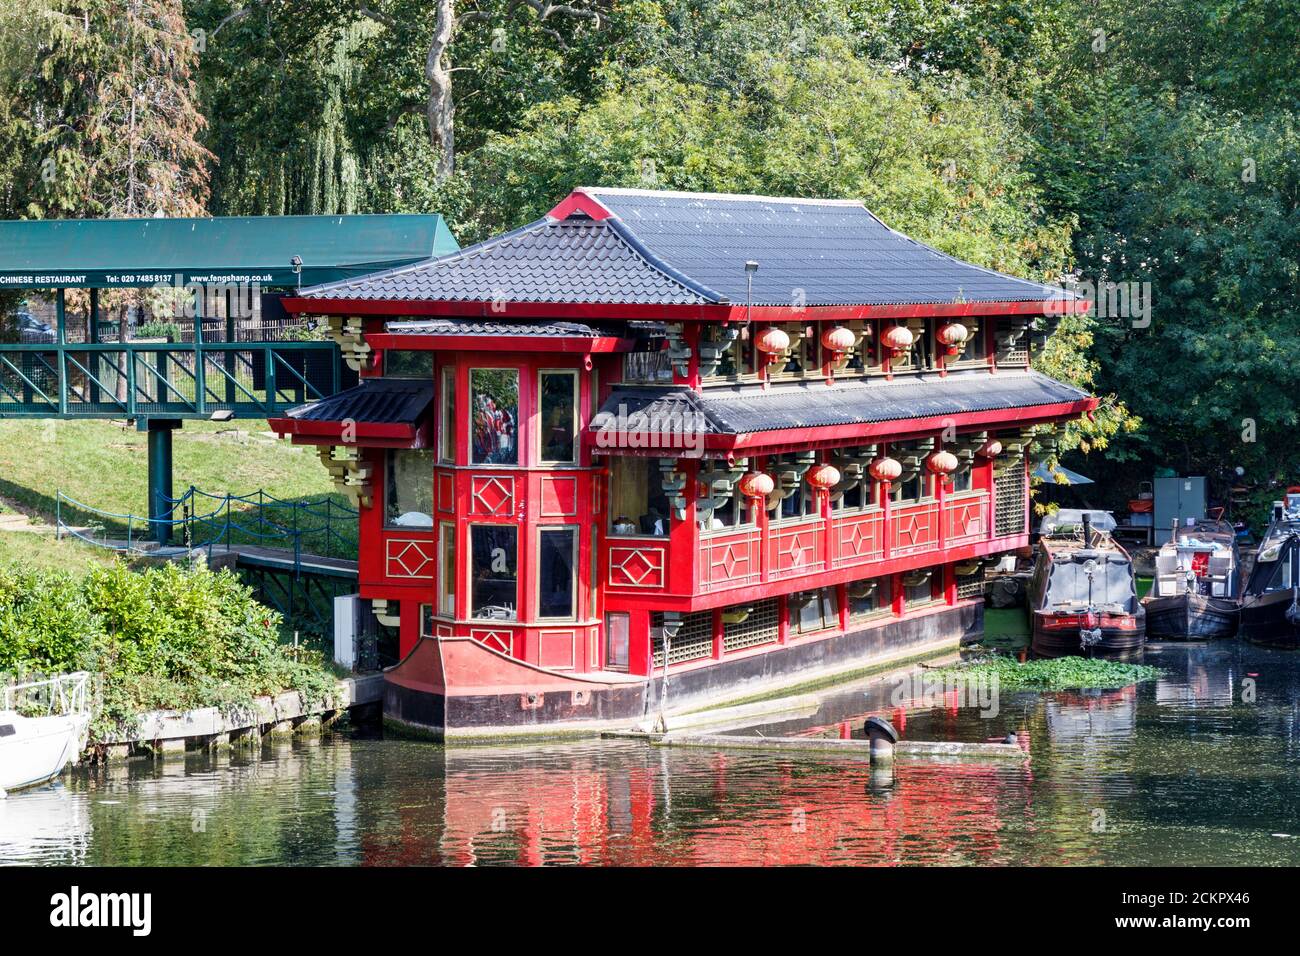 Il Feng Shang Princess, un ristorante cinese galleggiante costruito a mano nel 1980 nel Bacino Cumberland del Regent's Canal vicino al Regent's Park, Londra, Regno Unito Foto Stock